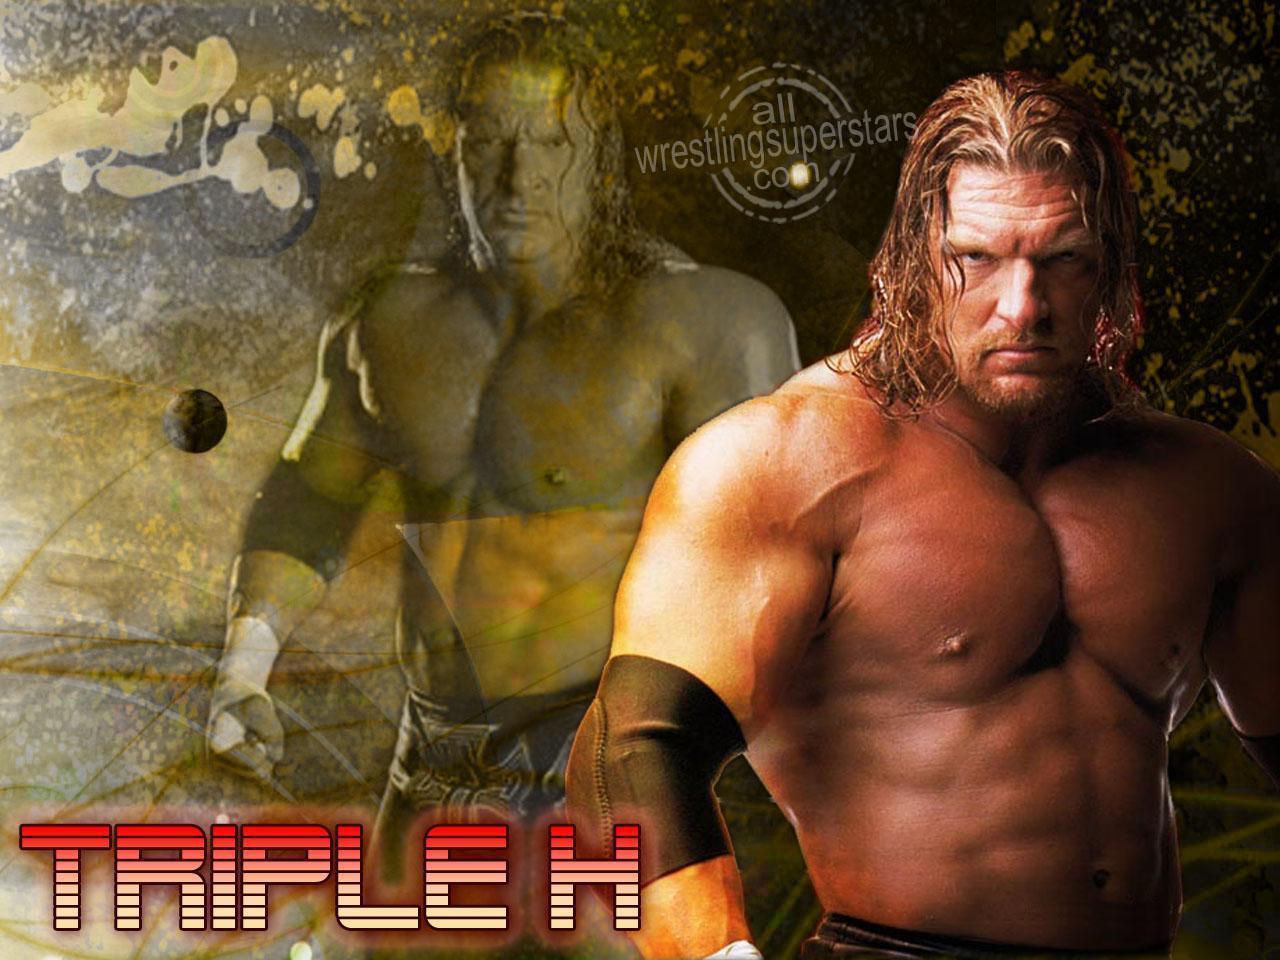 Triple H Desktop Wallpaper